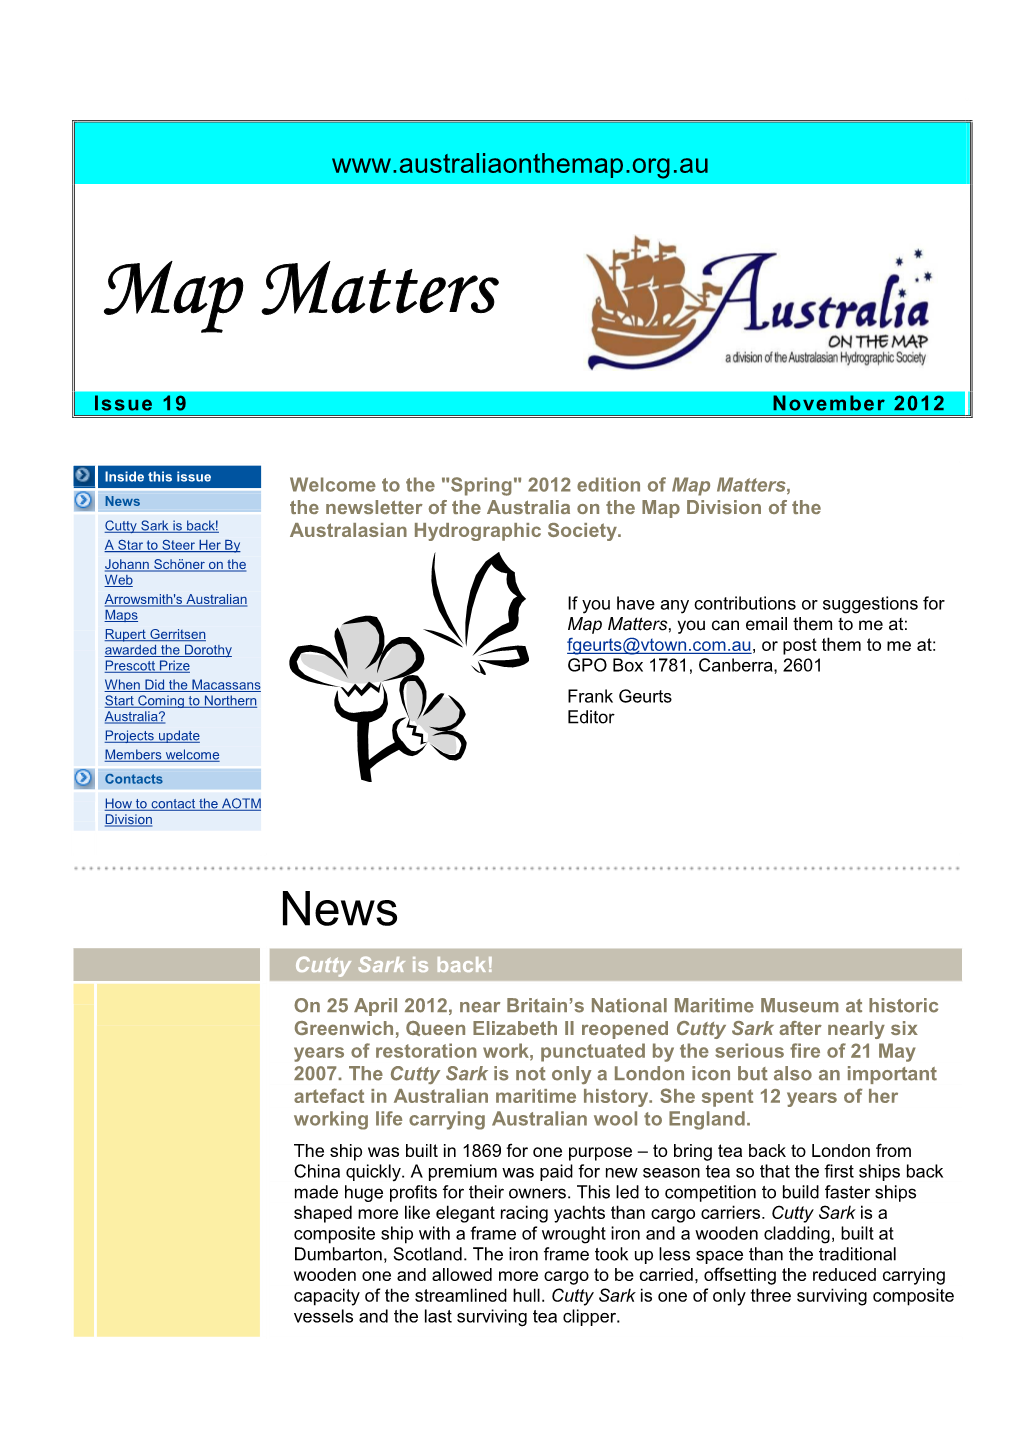 Map Matters 1